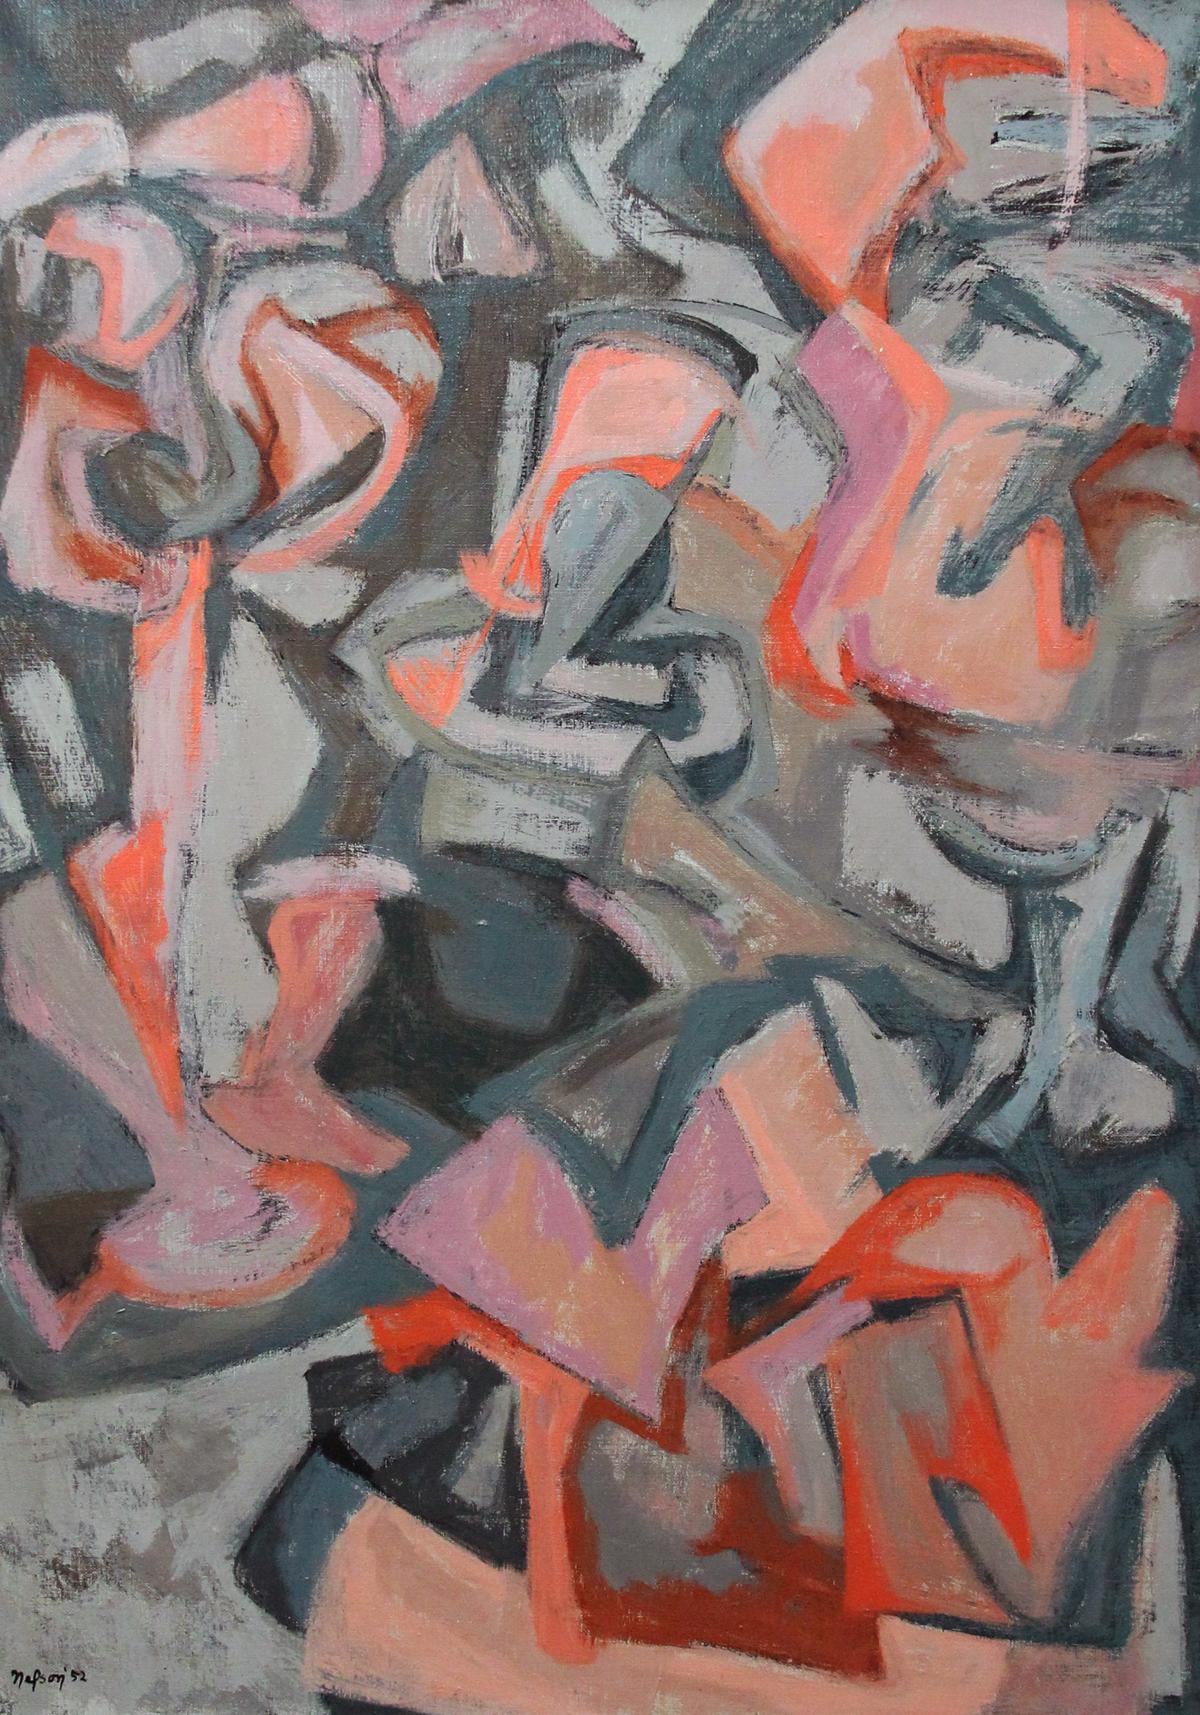 Les concurrents, huile sur toile figurative abstraite moderniste américaine, 1952 - Painting de Leonard Nelson